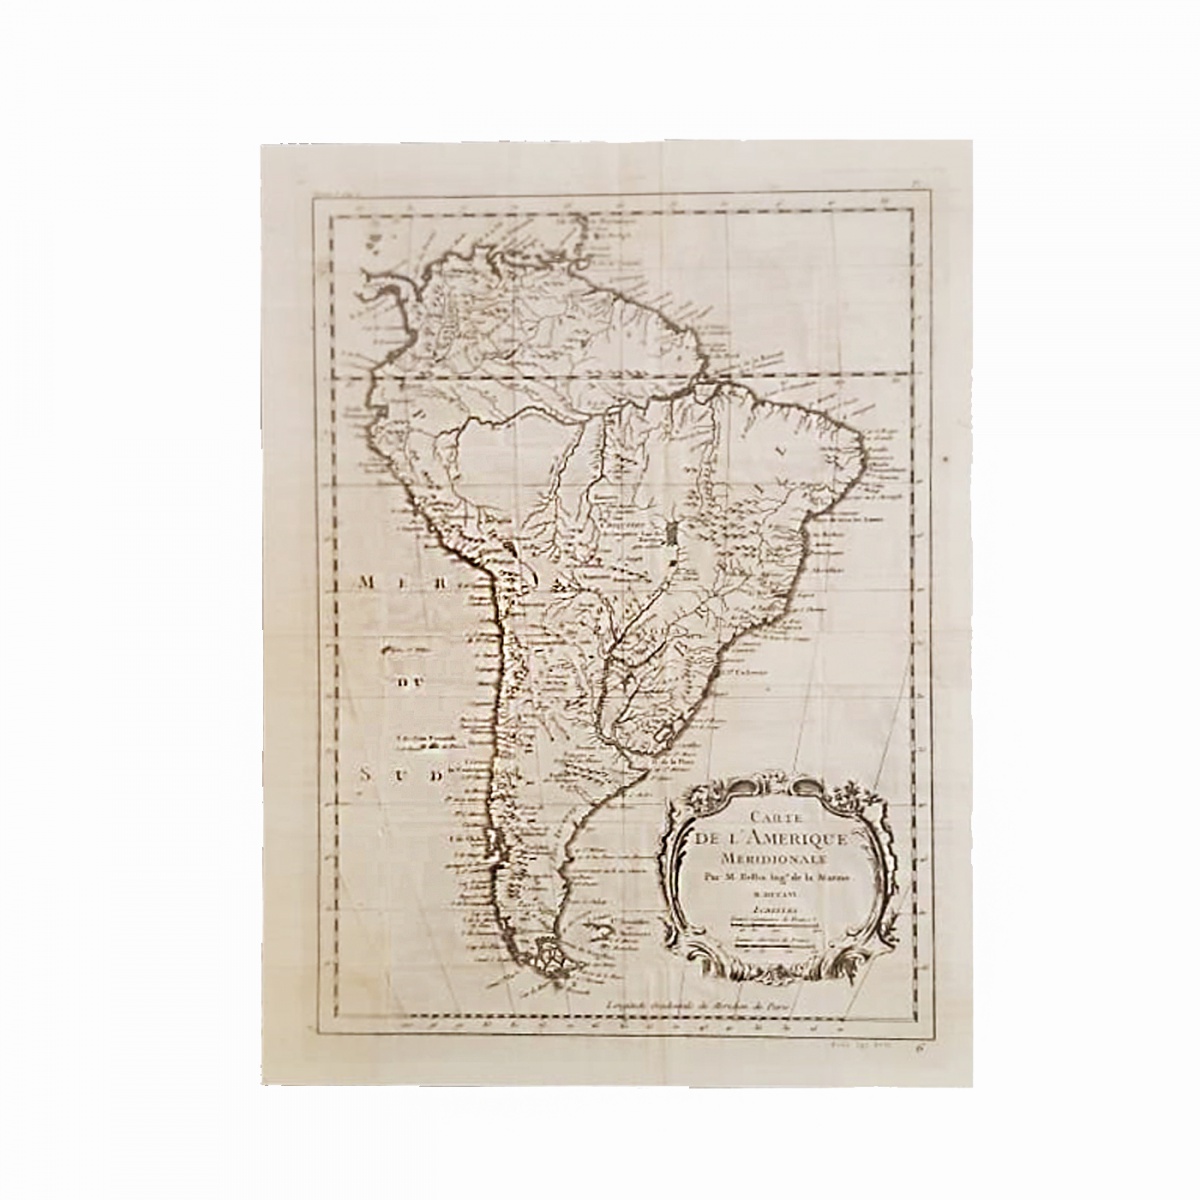 Mapa Politico Br Mapa Mapas Antigos Historia Do Brasil Images 5775